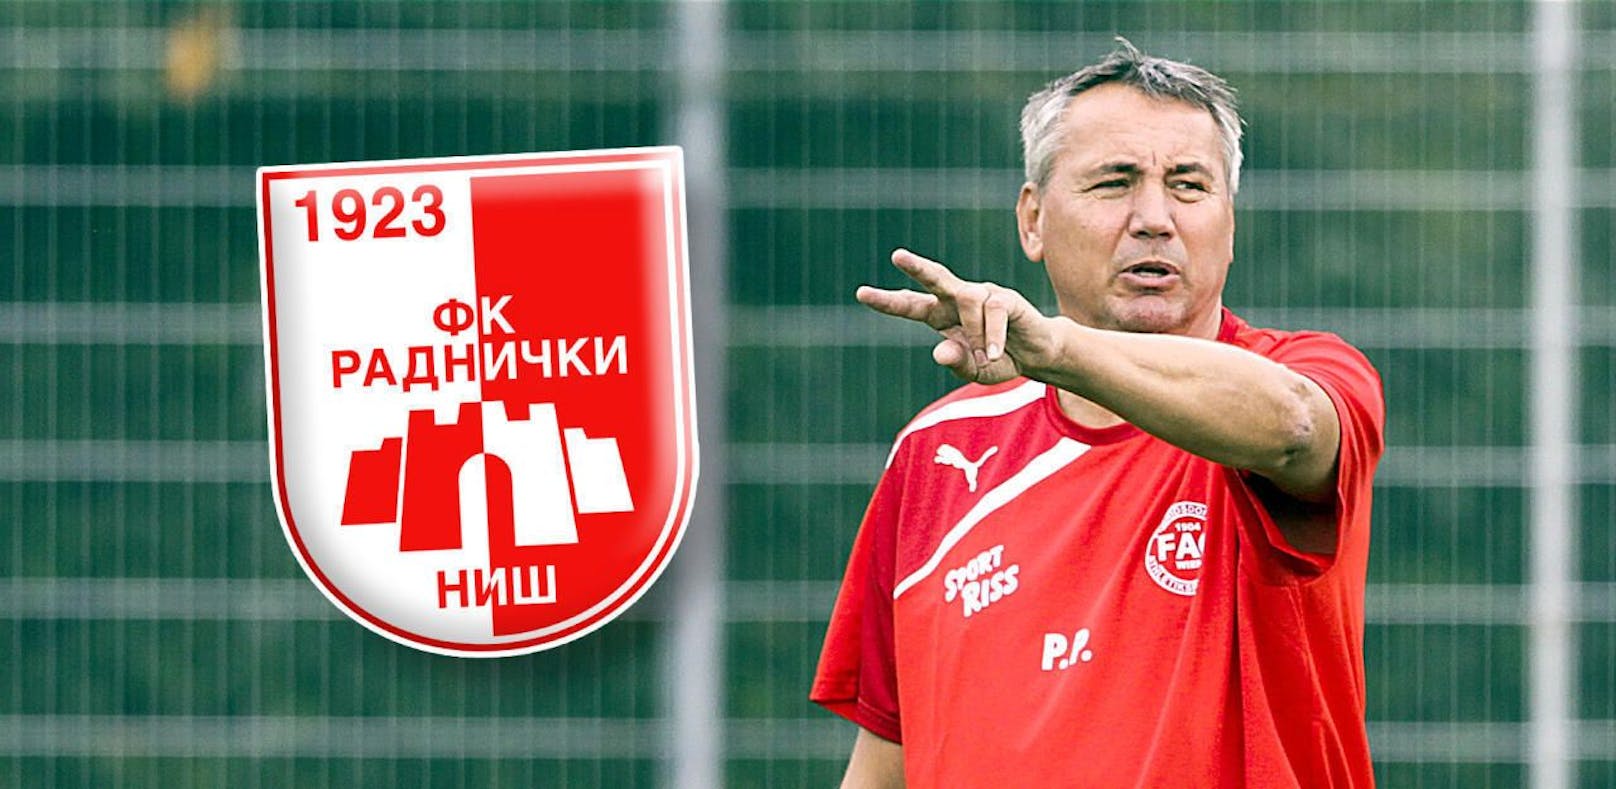 Neuer Job! Trainer Peter Pacult heuert in Serbien bei Radnicki Nis an.